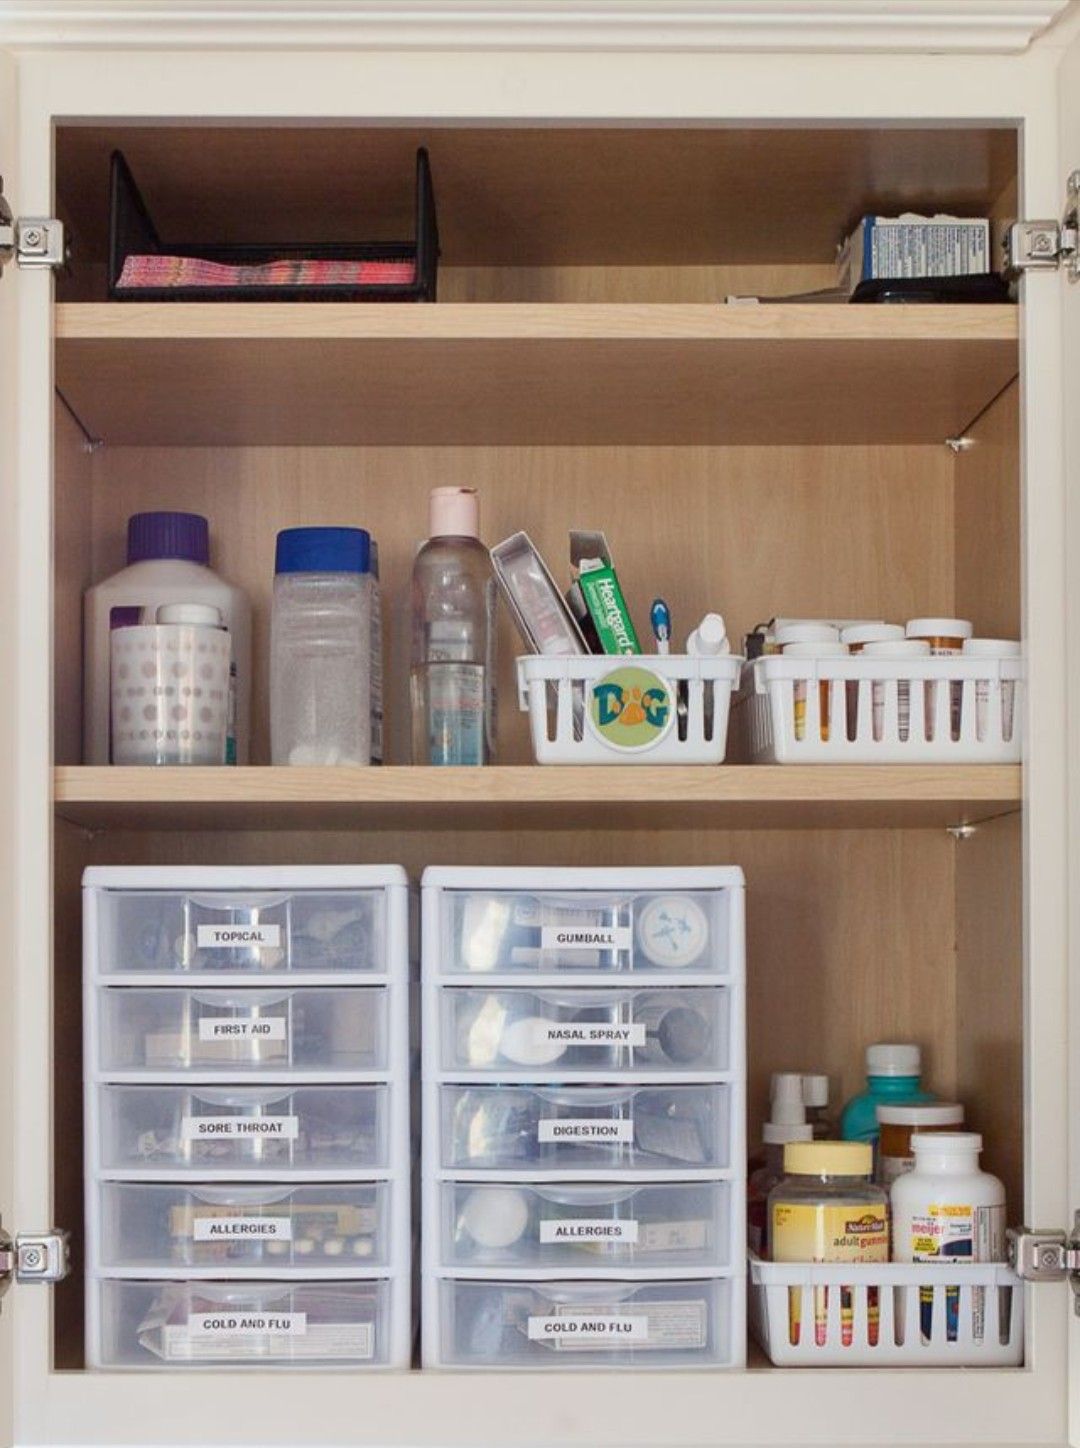 Группа хранения препаратов. Организовать хранение медикаментов. Шкаф для лекарственных препаратов. Полочки для лекарств в шкафу. Шкаф для хранения лекарственных веществ.